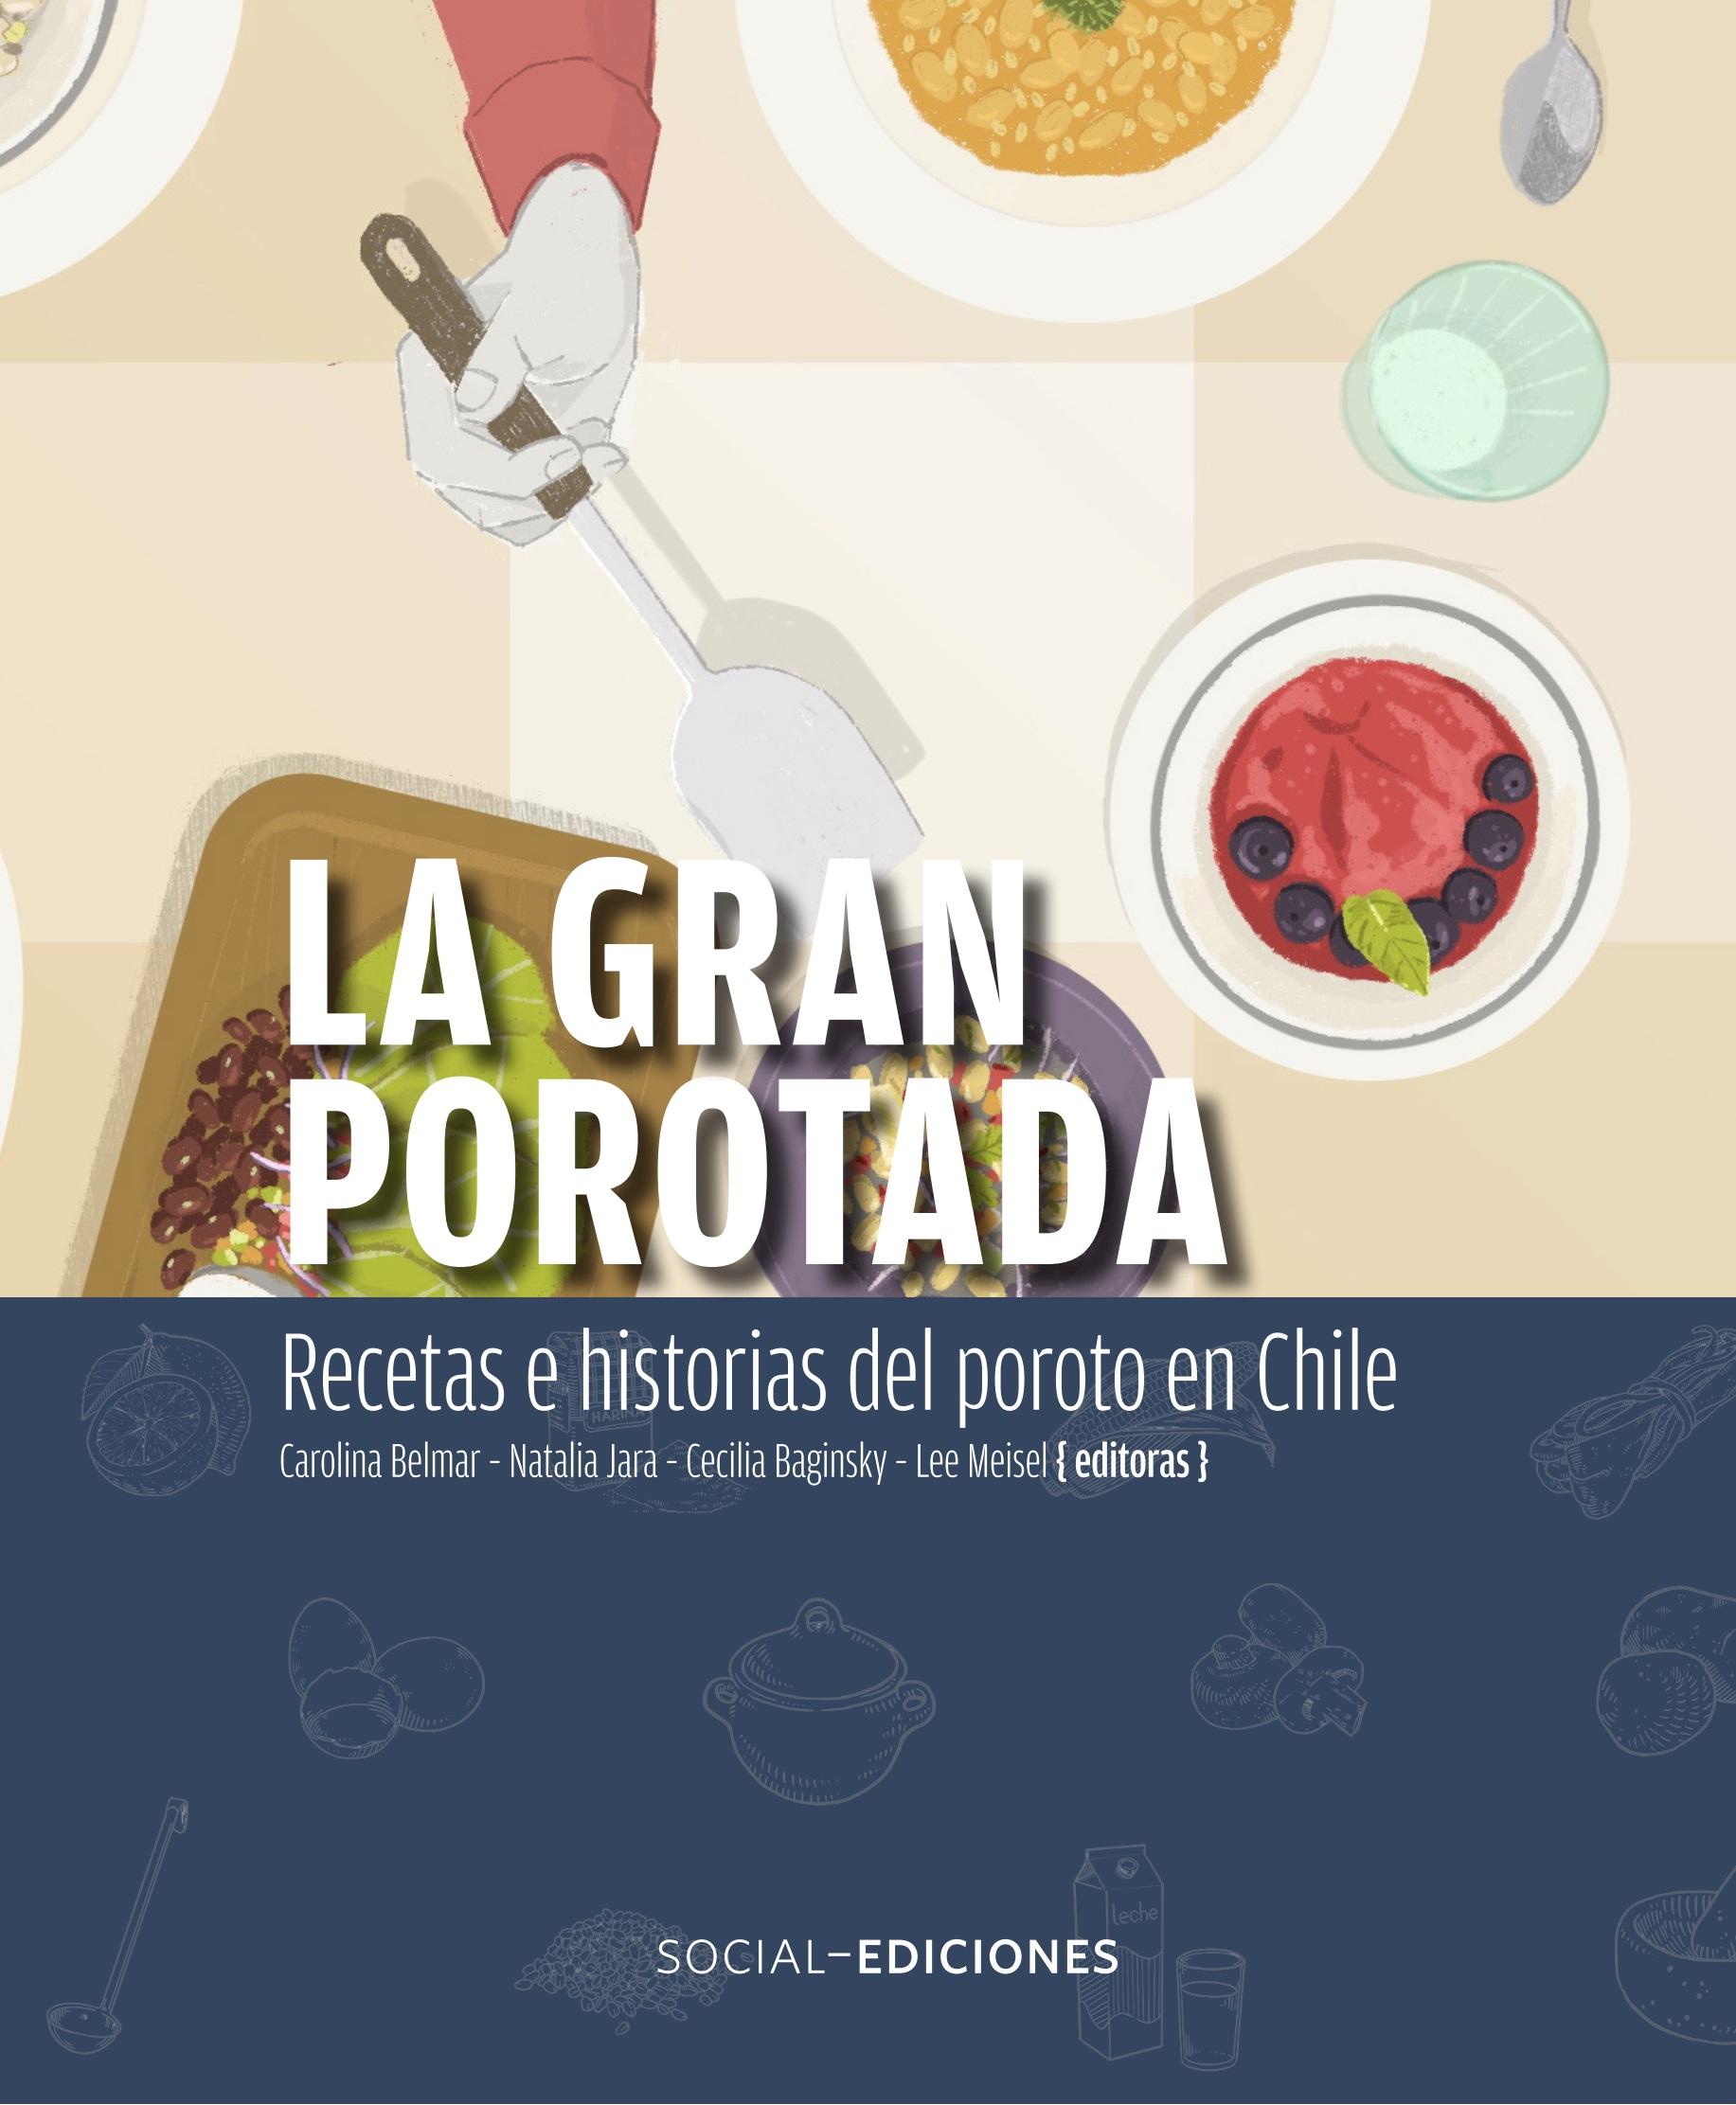 La gran porotada. Recetas e historias del poroto en Chile